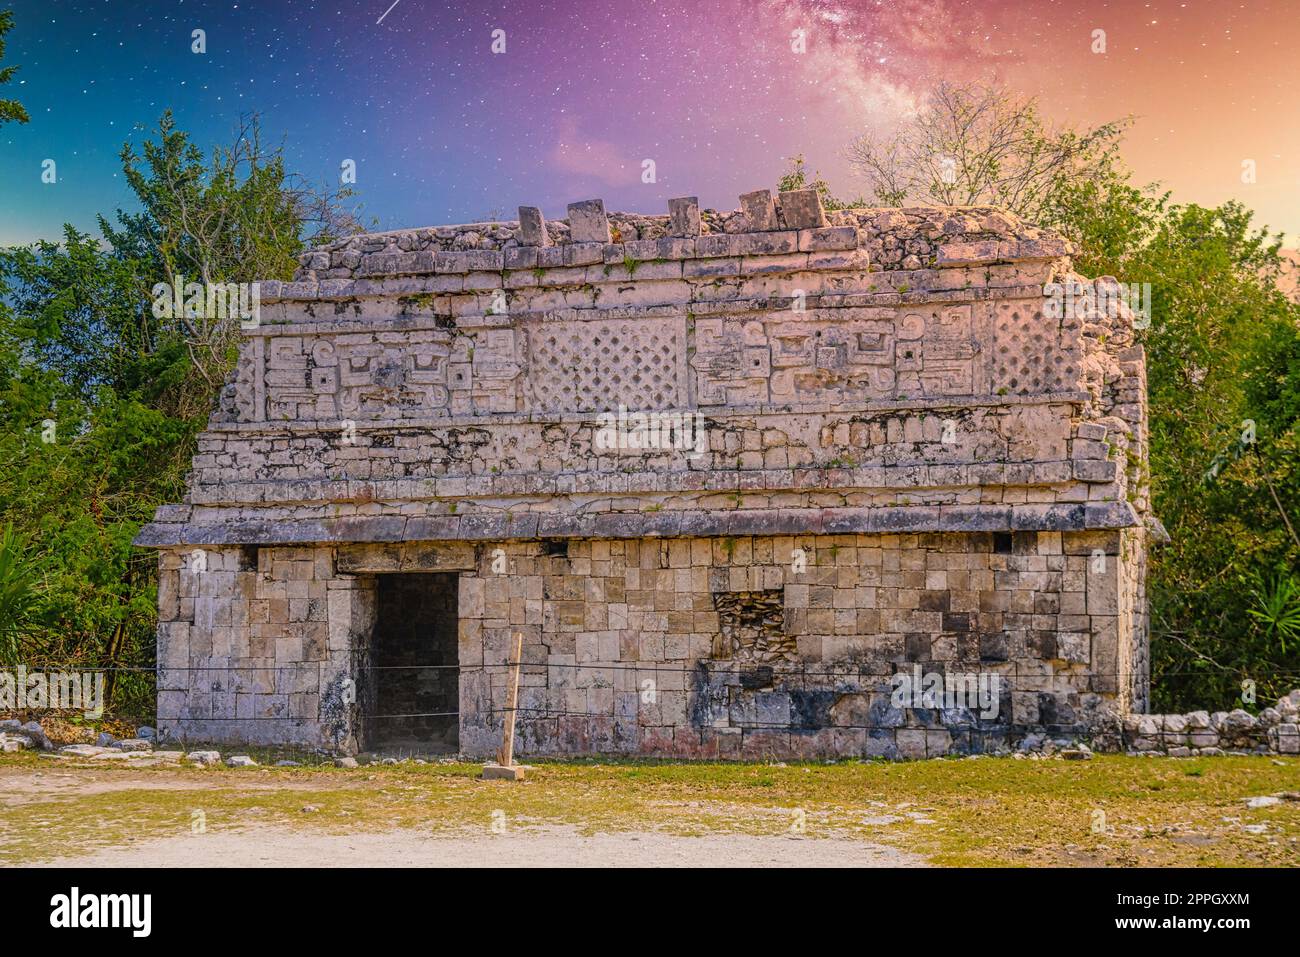 Adorare le chiese maya elaborate strutture di culto al dio della pioggia Chaac, complesso monastico, Chichen Itza, Yucatan, Messico, Civiltà Maya con la via Lattea Galaxy stelle cielo notturno Foto Stock